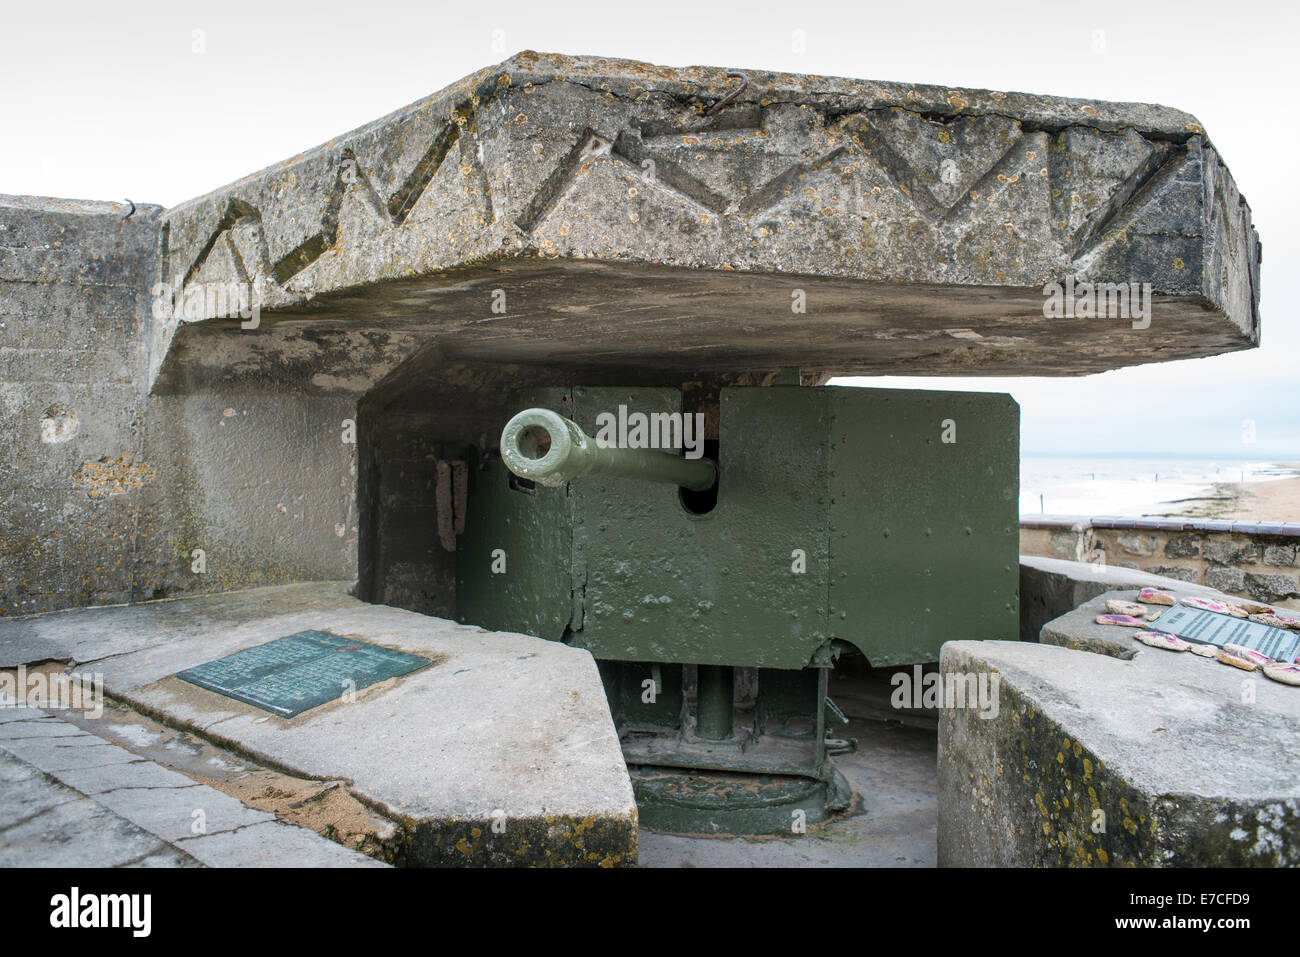 Bunker allemand WW1 Seconde Guerre mondiale armés de deux canons sur la digue de mer à Courseulles-sur-Mer, Normandie, France Banque D'Images